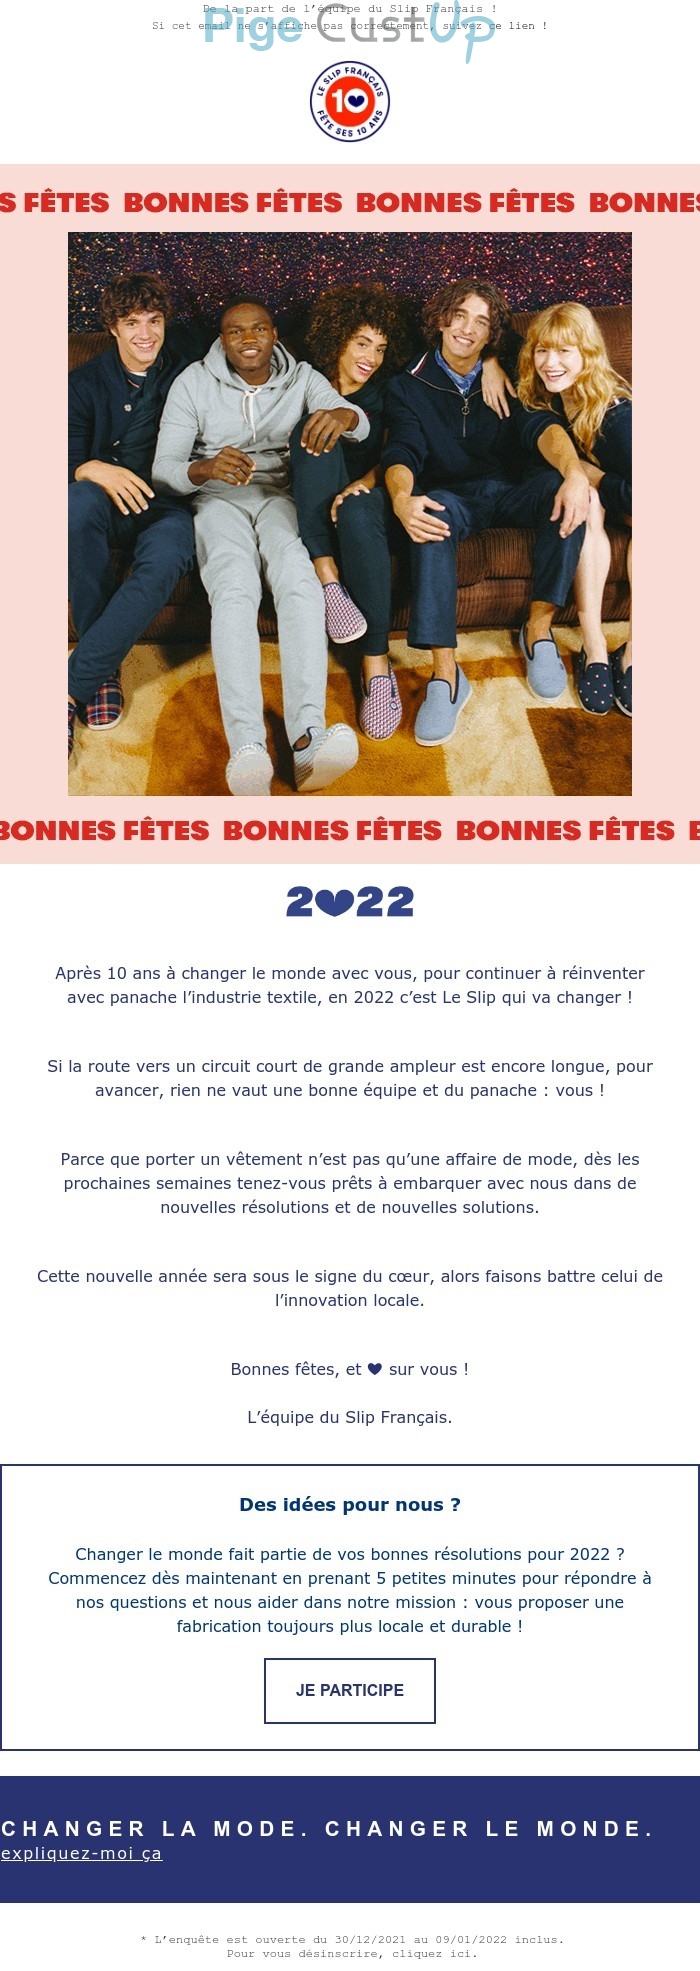 Exemple de Type de media   - Le slip français - Marketing relationnel - Calendaire (Noël, St valentin, Vœux, …) - Newsletter